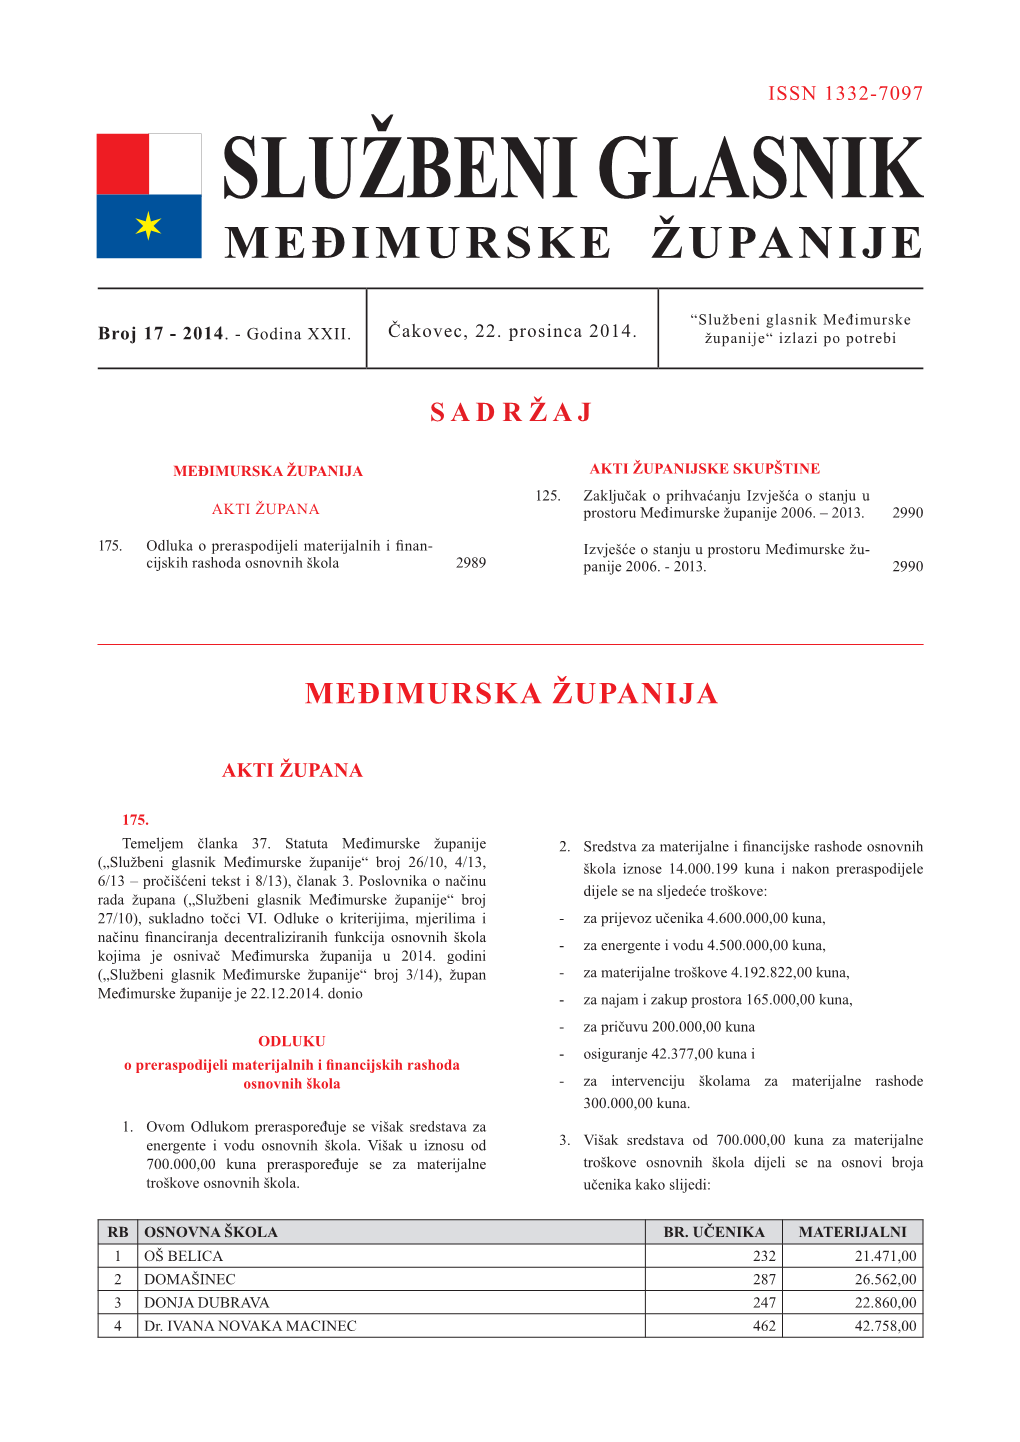 Međimurska Županija Akti Županijske Skupštine 125